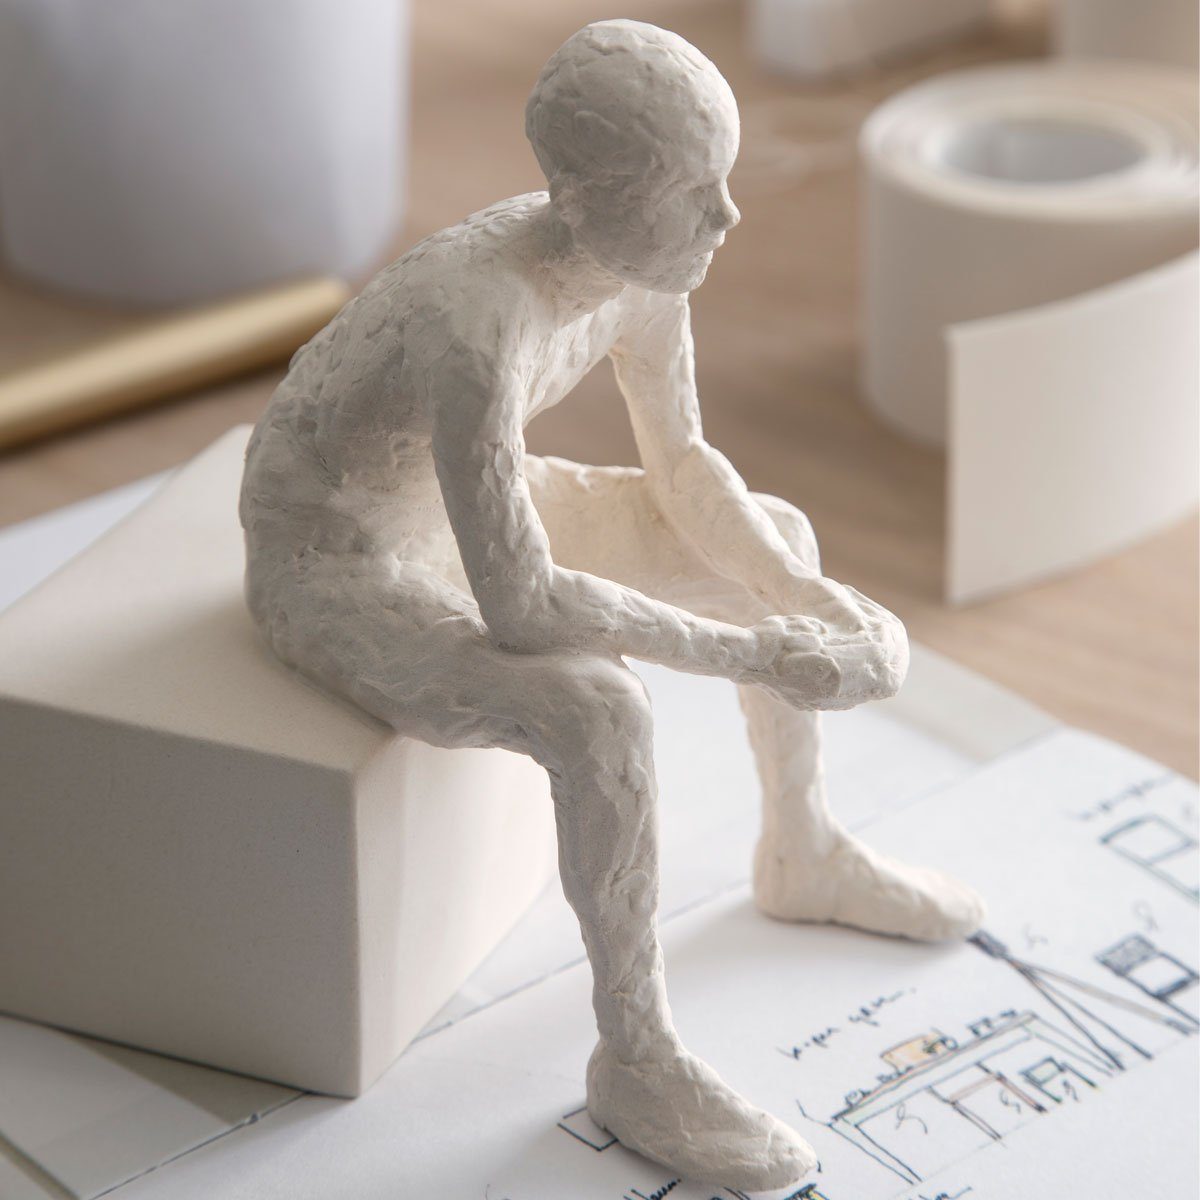 One der Kähler 'Character' The (Der Dekofigur Nachdenkliche); Keramik Bjelke Reflective Malene von Bildhauerin Serie Skulptur aus